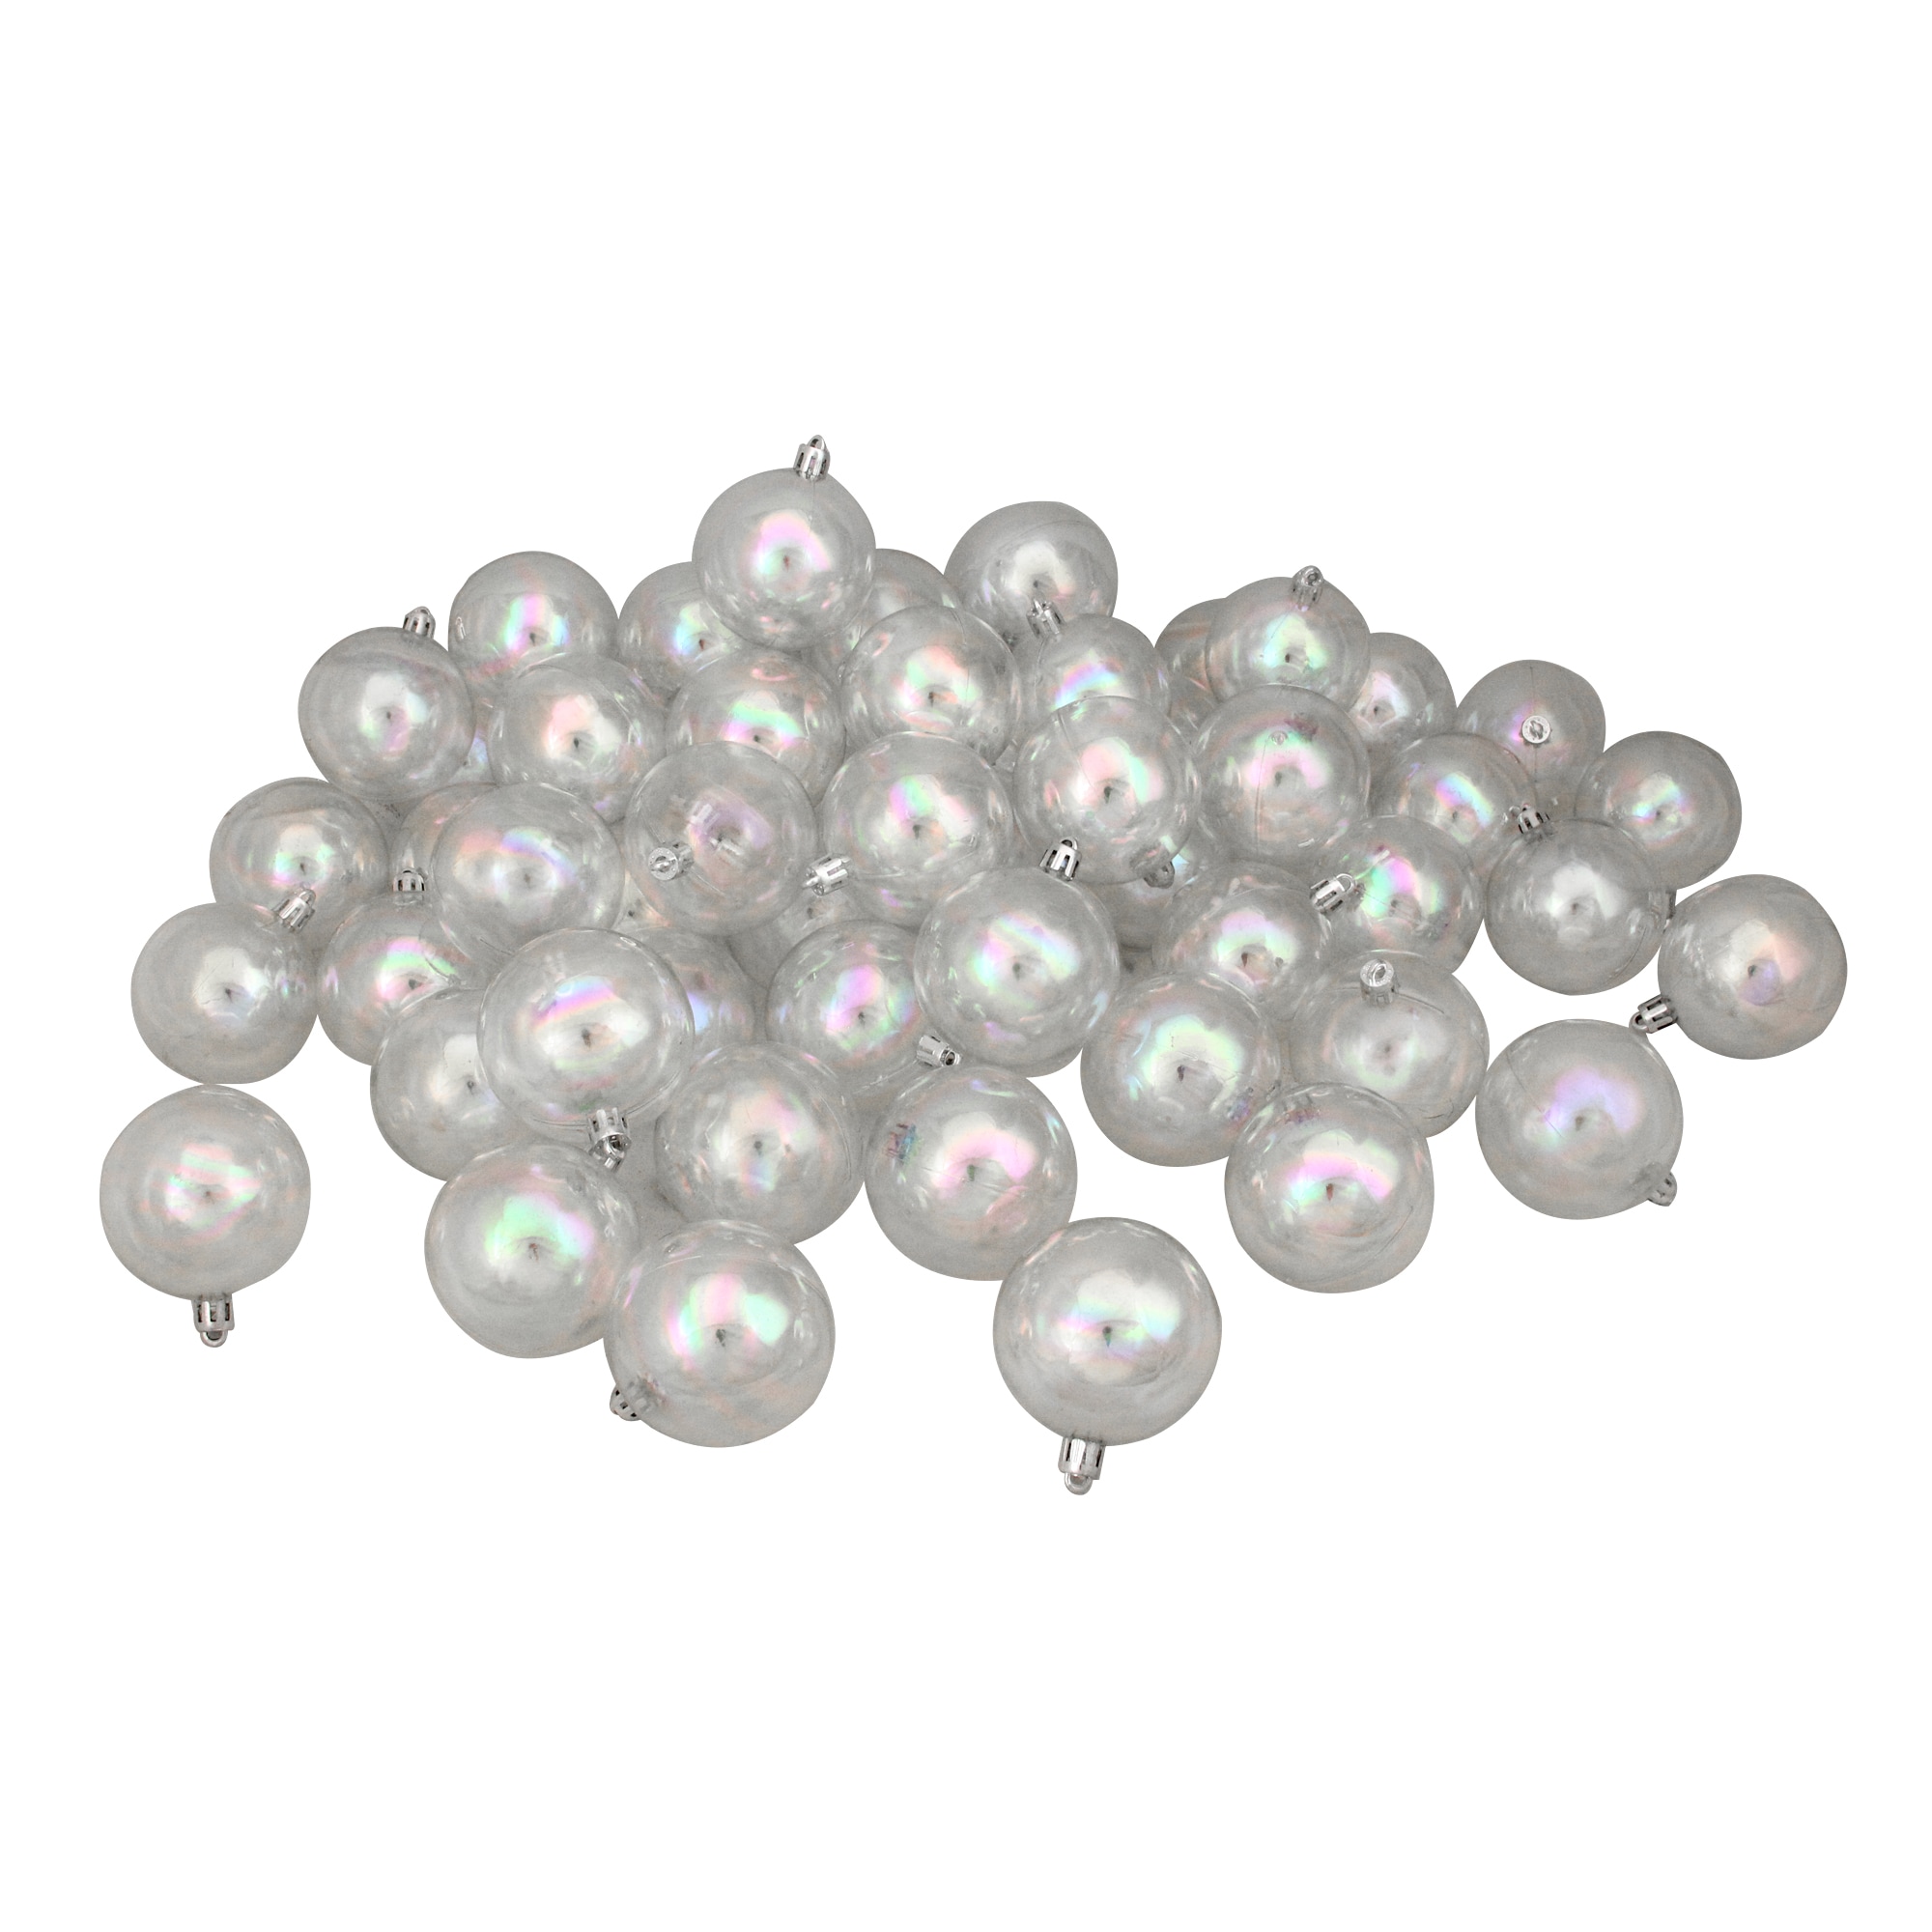 Northlight Iridescent 12-Piece Shatterproof Plastic Ornament Set